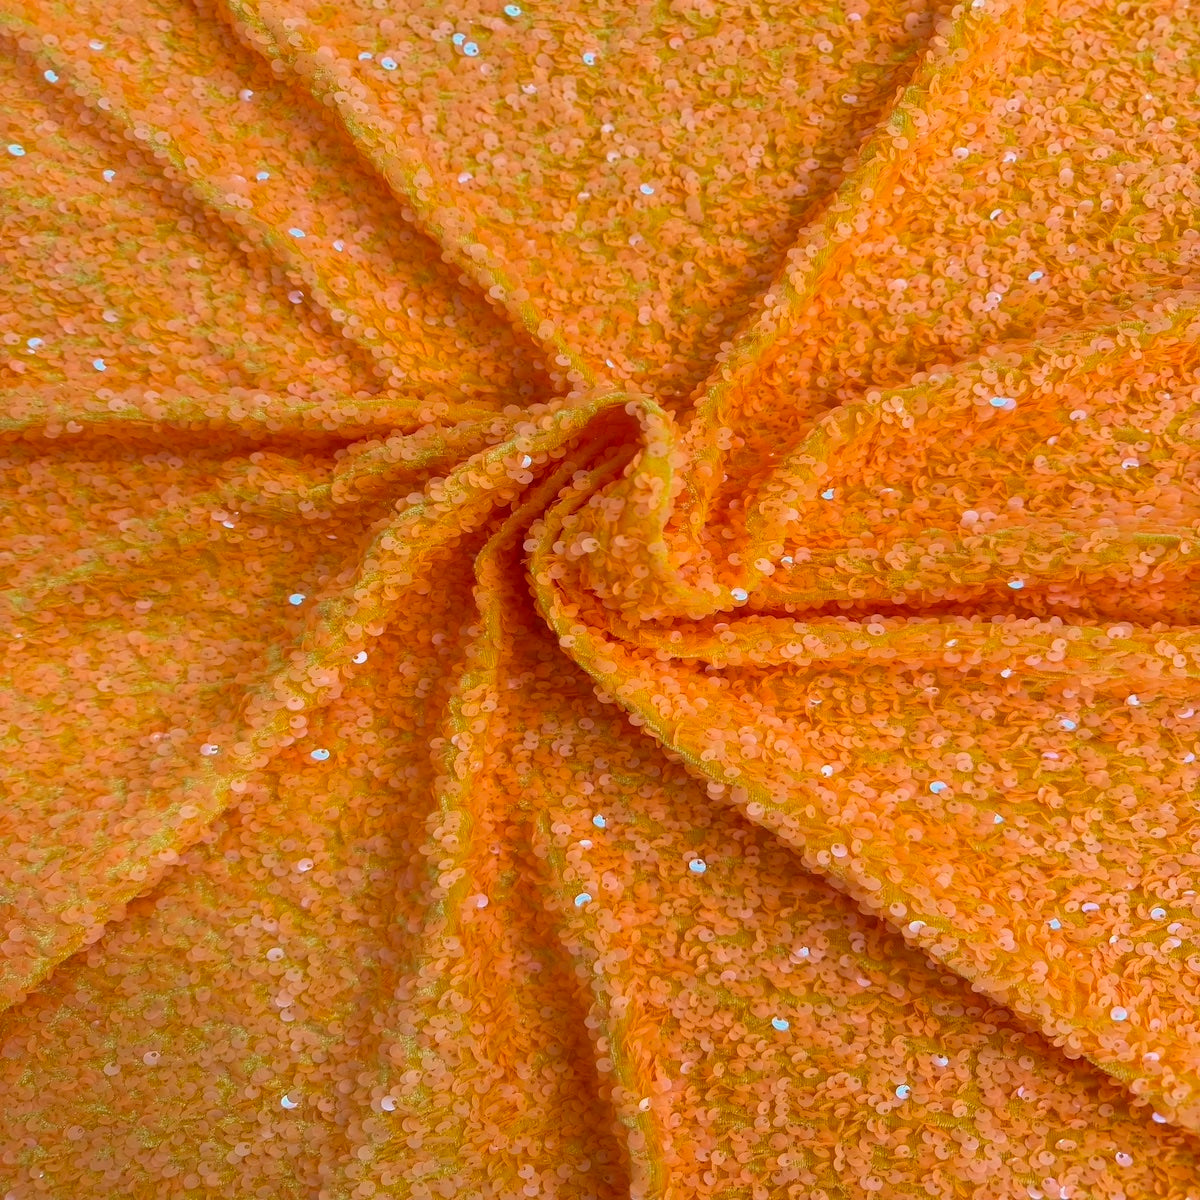 Tela de rodeo de terciopelo elástico bordada con lentejuelas de rodeo naranja besadas por el sol